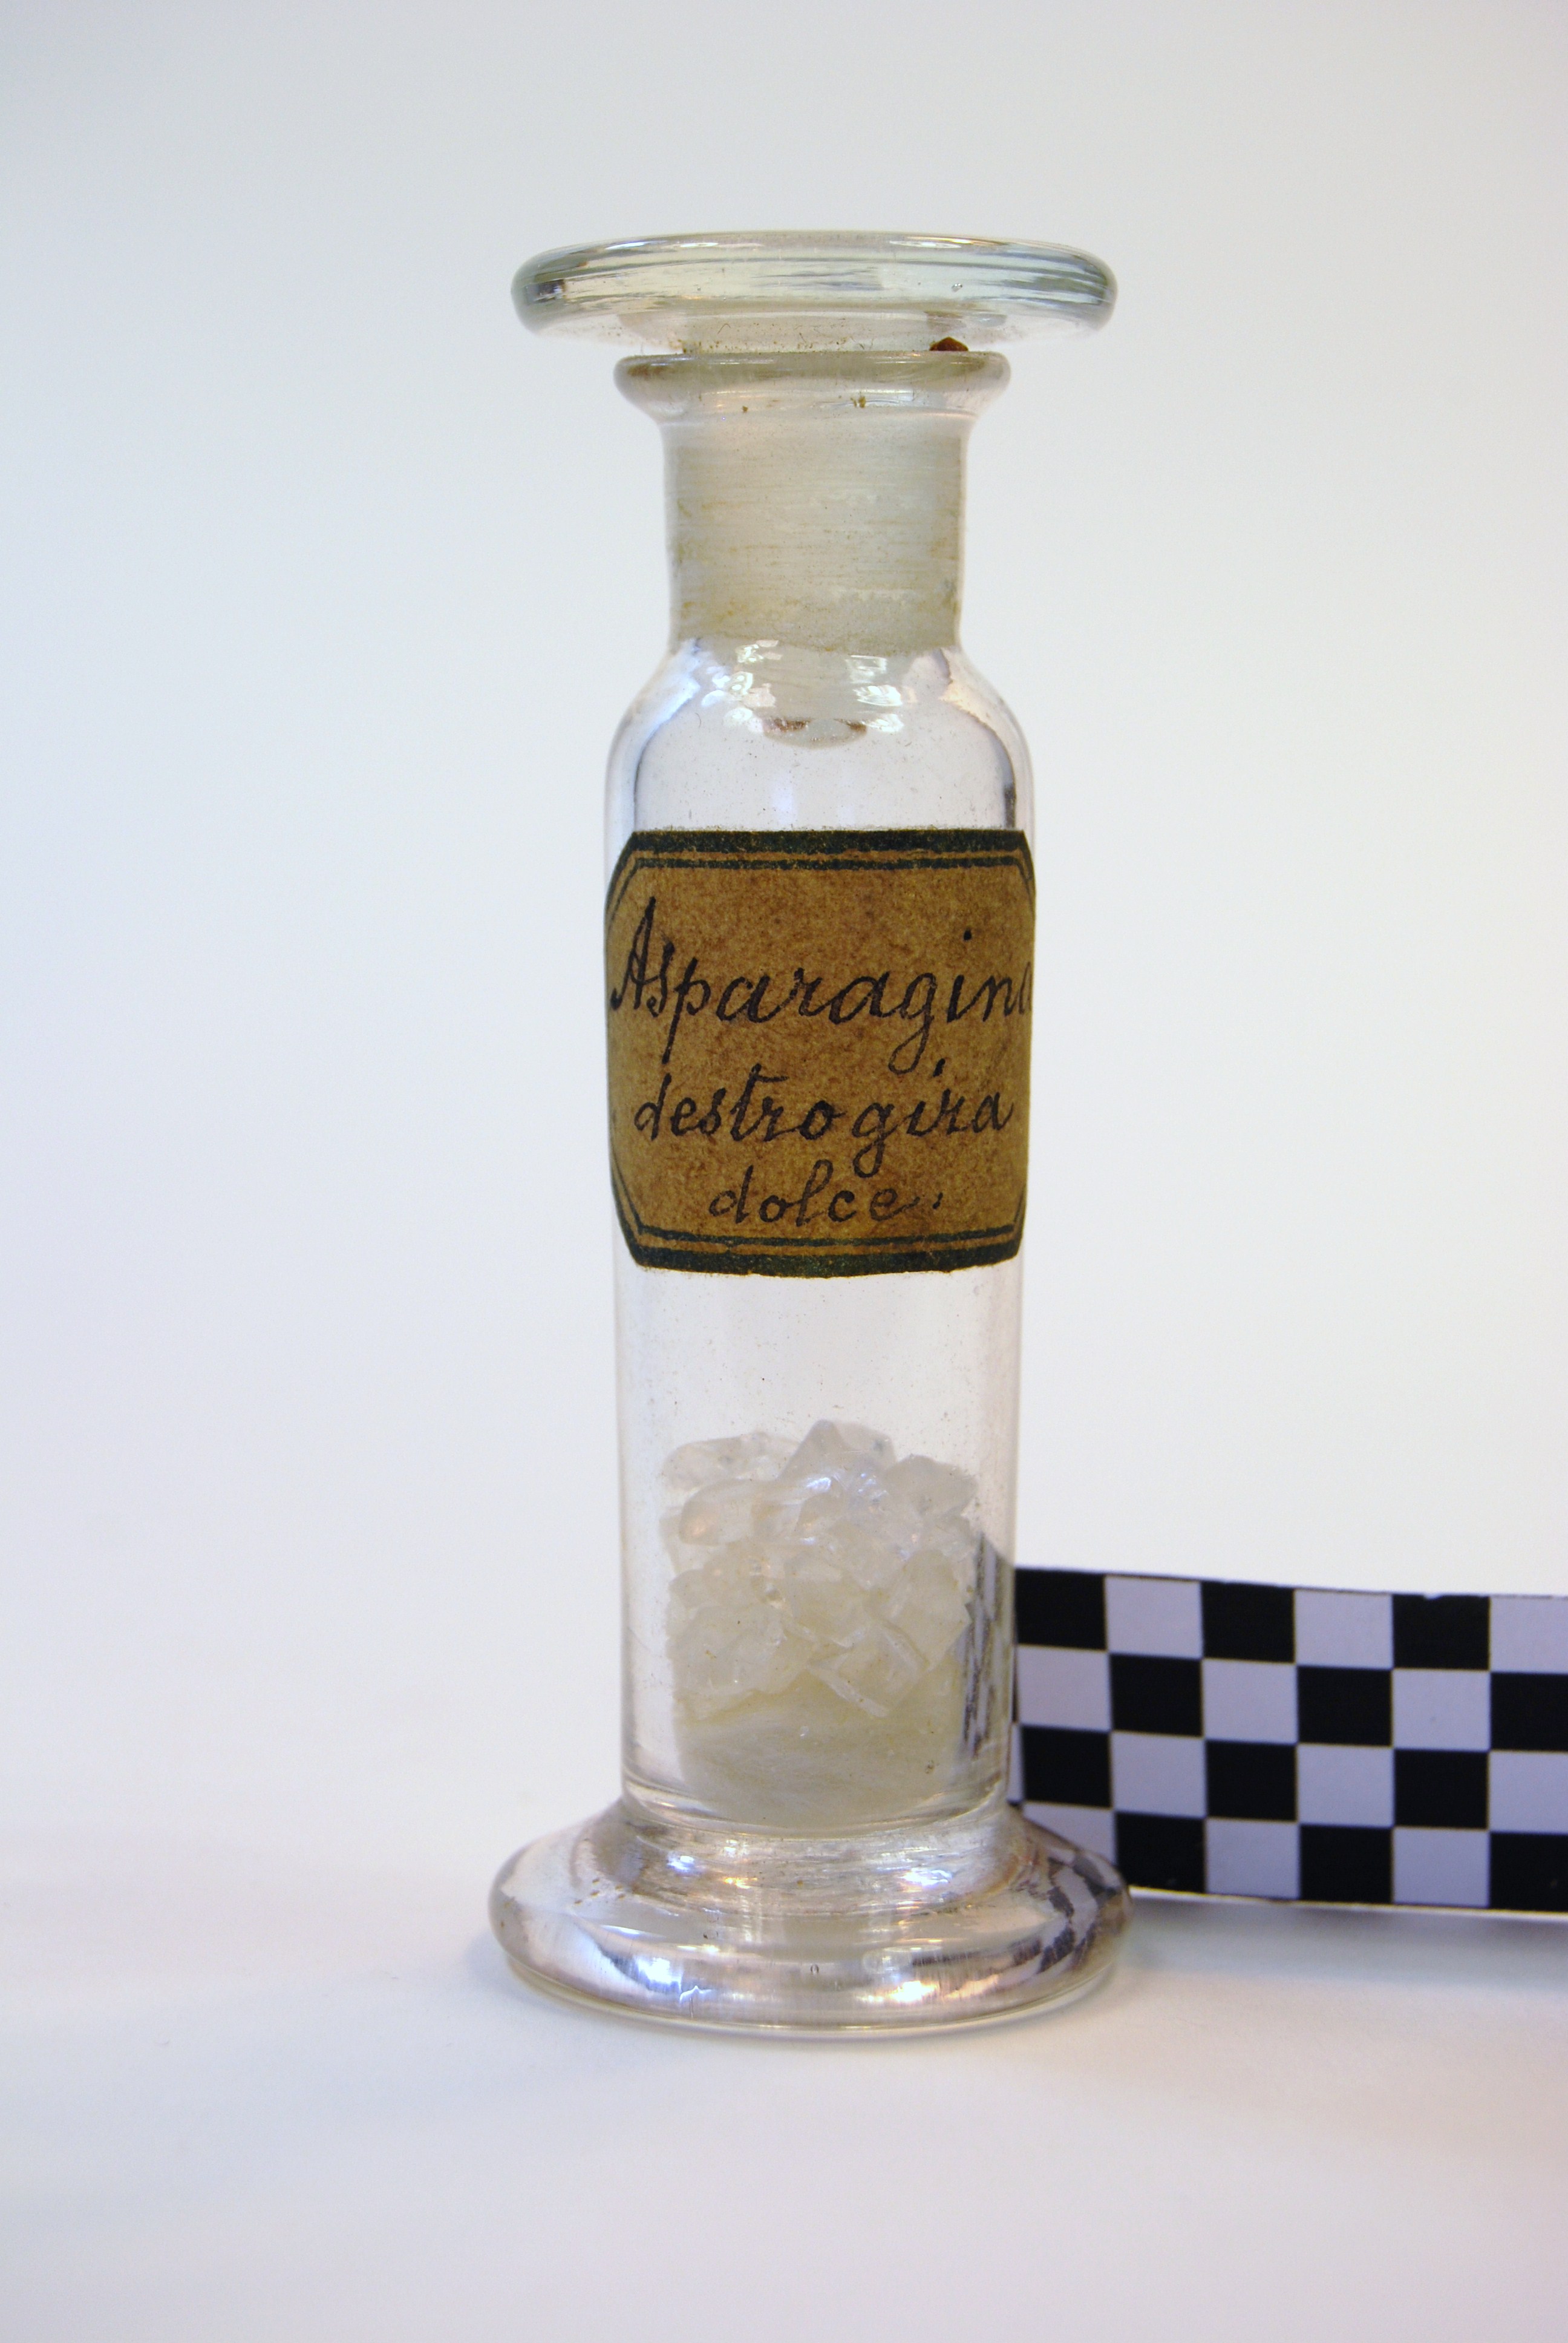 asparagina destrogira dolce (prodotto chimico, di sintesi) di Arnaldo Piutti (attribuito) - scuola chimica fiorentina, scuola chimica torinese (metà/ inizio XIX/ XX)